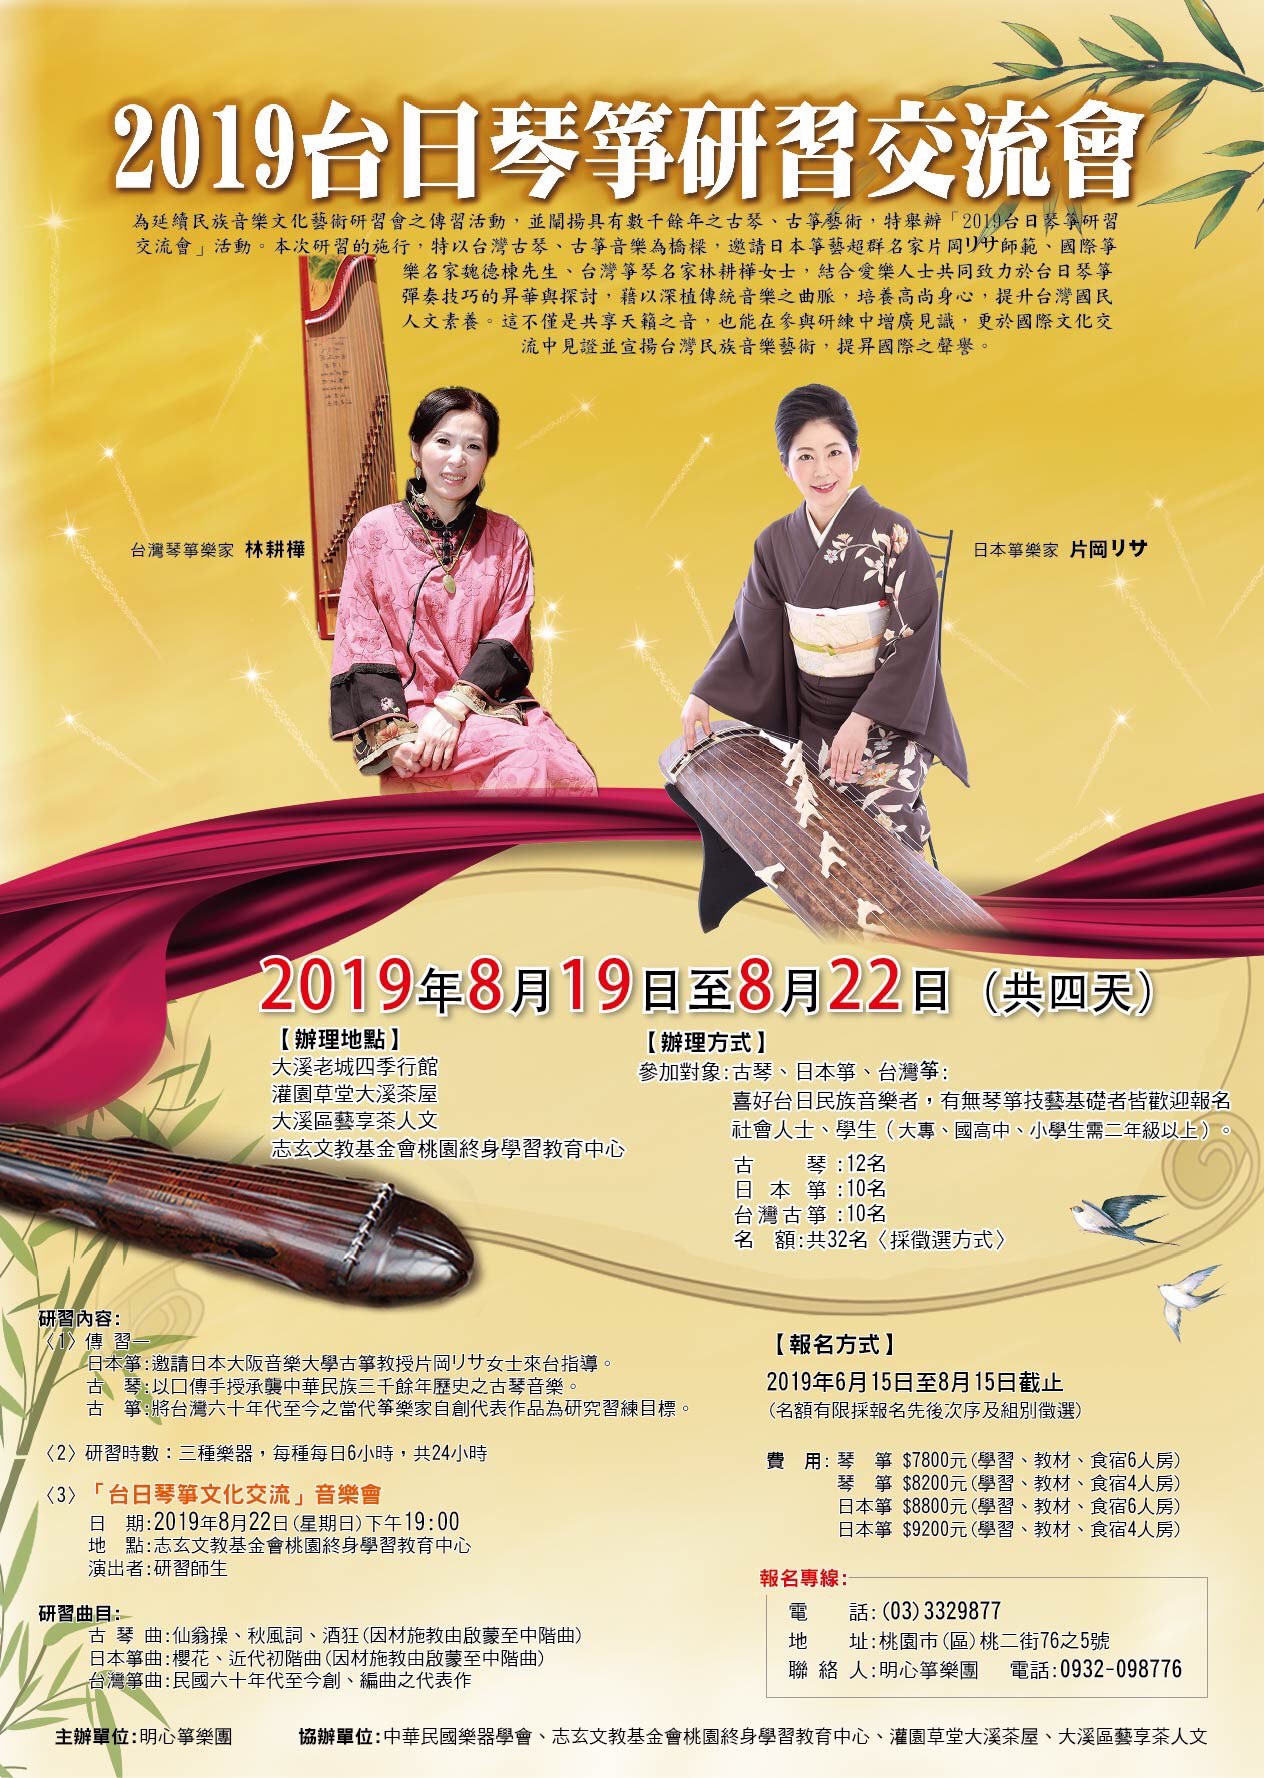 2019台日琴箏研習交流會 》 | 片岡 リサ